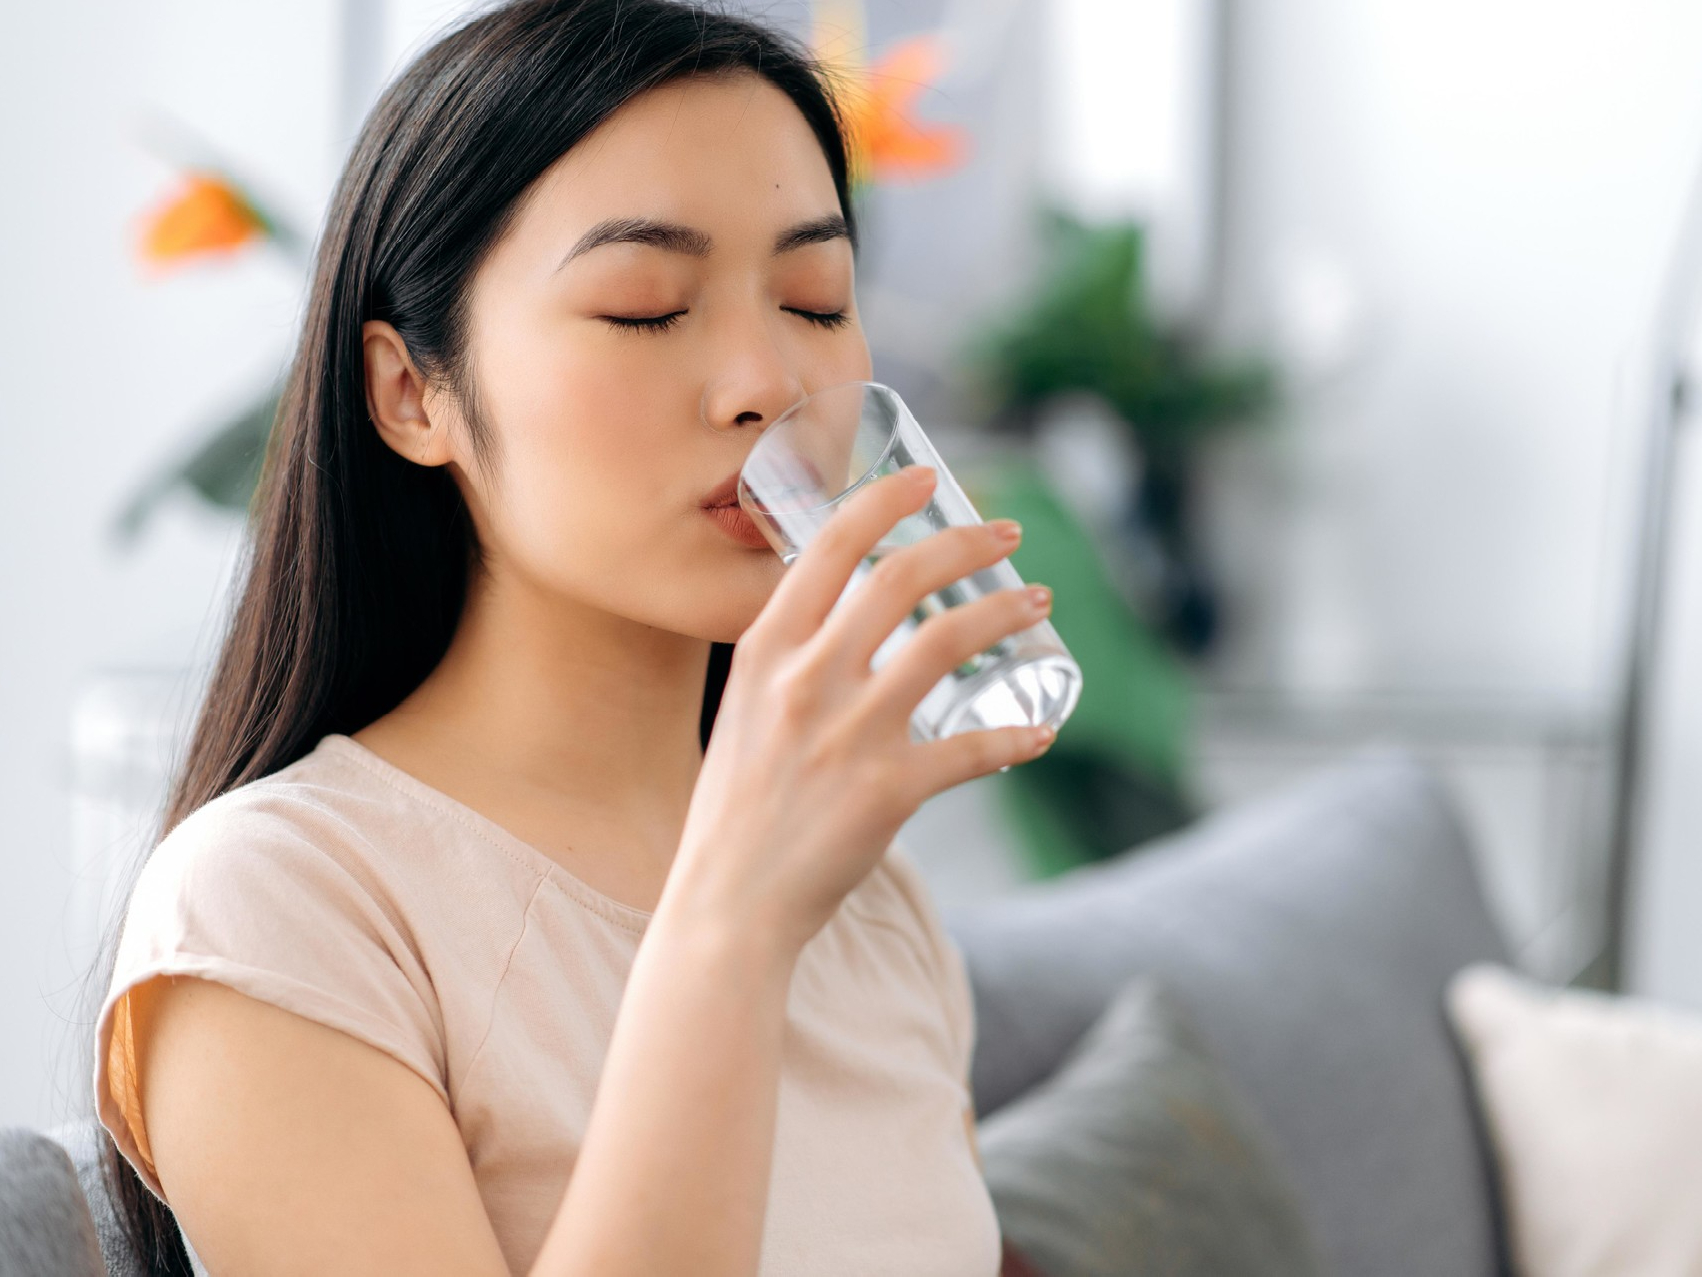 Китайцы считают, что пить горячую воду - это не просто обычная привычка, это способ заботы о своем здоровье. Они уверены, что утренний ритуал питья горячей воды помогает укрепить организм, улучшить общее состояние и продлить жизнь.